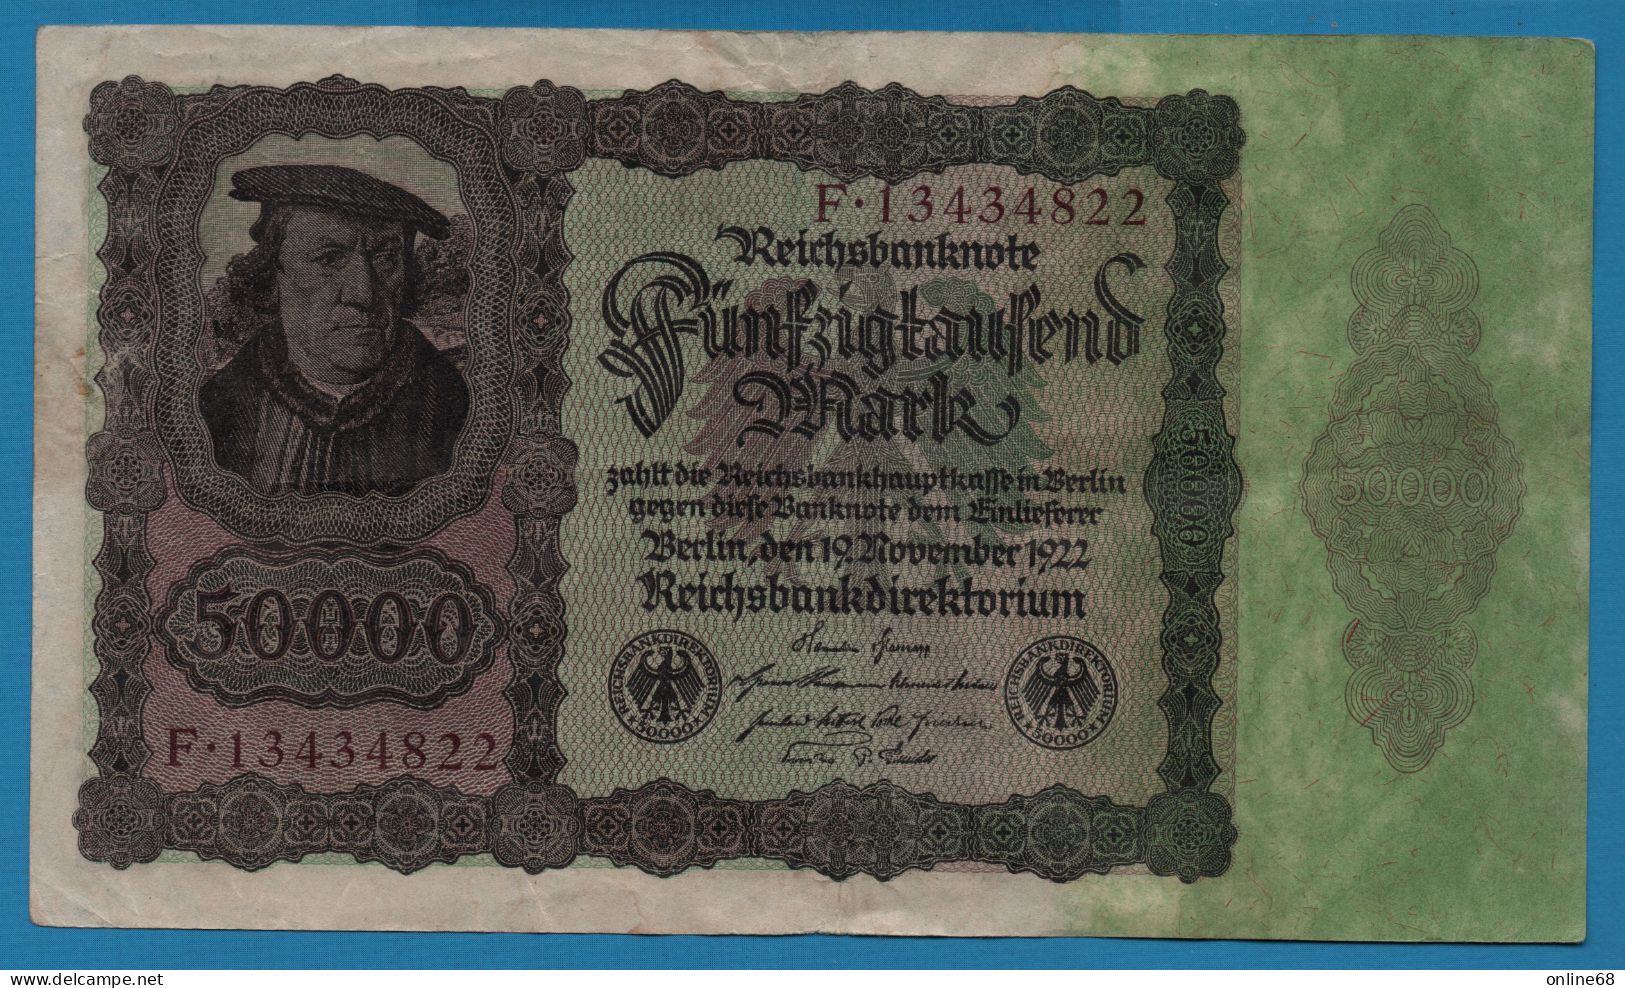 DEUTSCHES REICH 50.000 MARK 19.11.1922 # F.13434822 P# 80 Bürgermeister Brauweiler - 50000 Mark